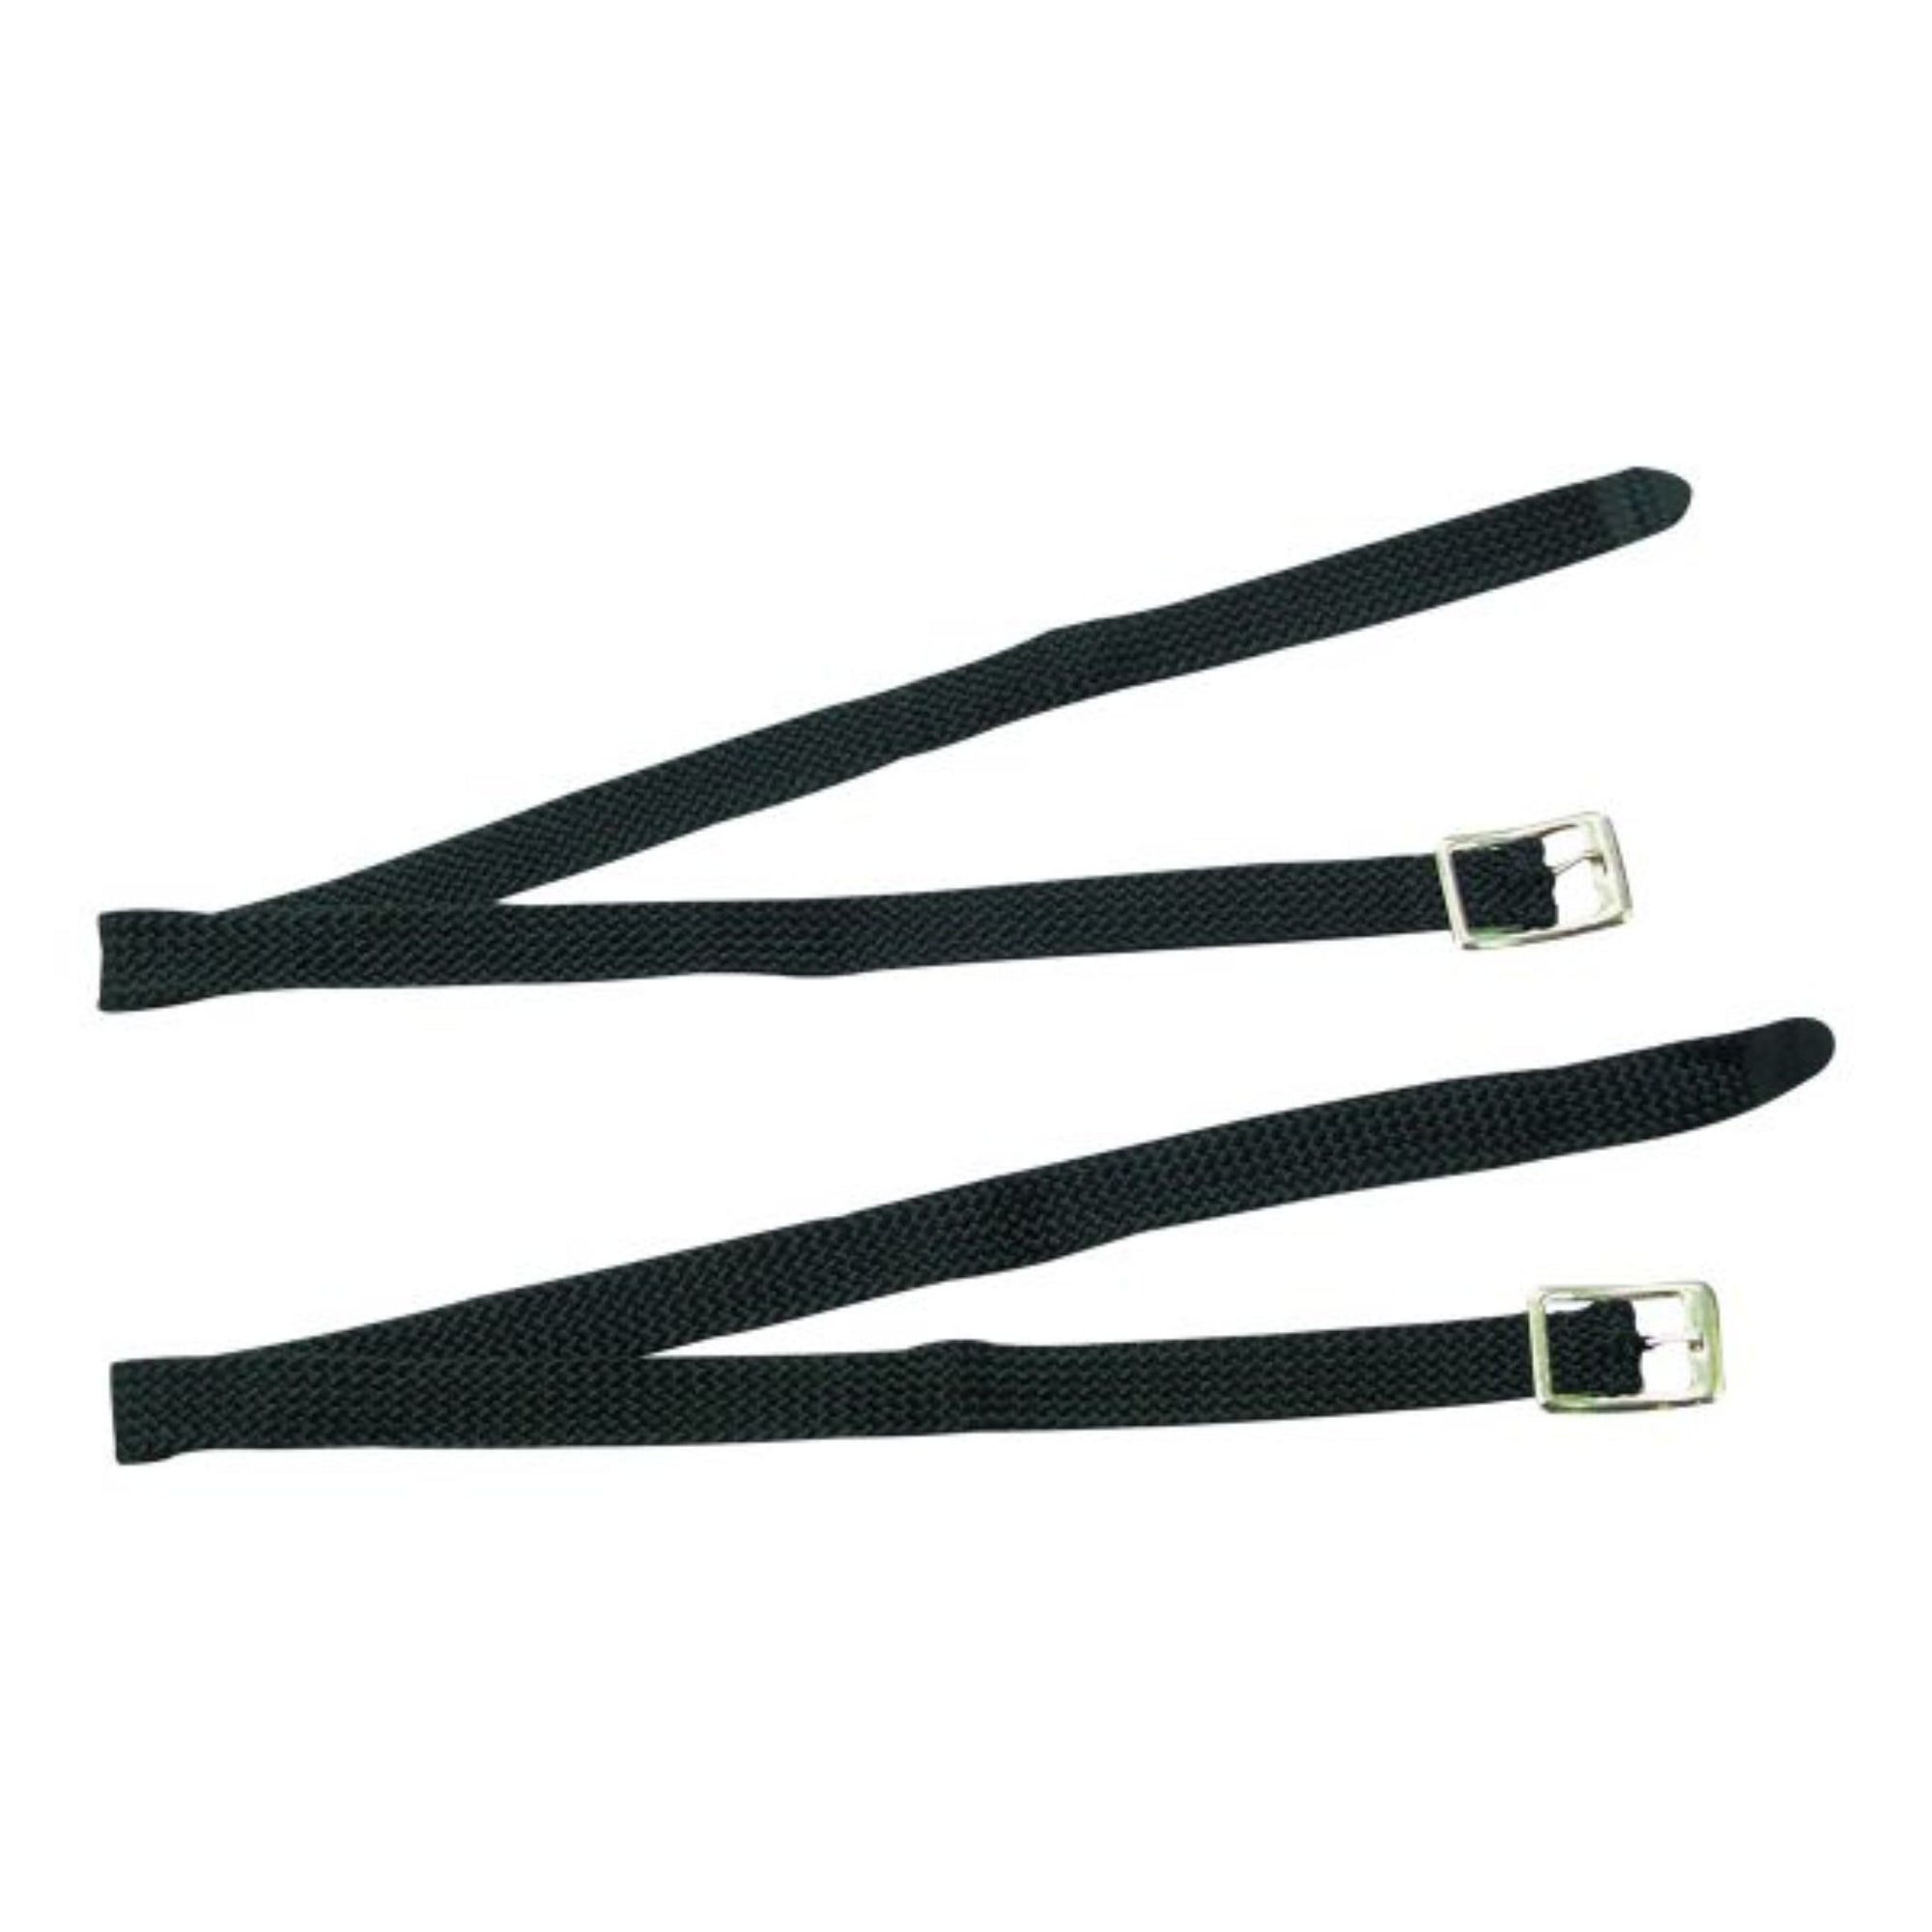 Black webbing strap with sliver buckle.